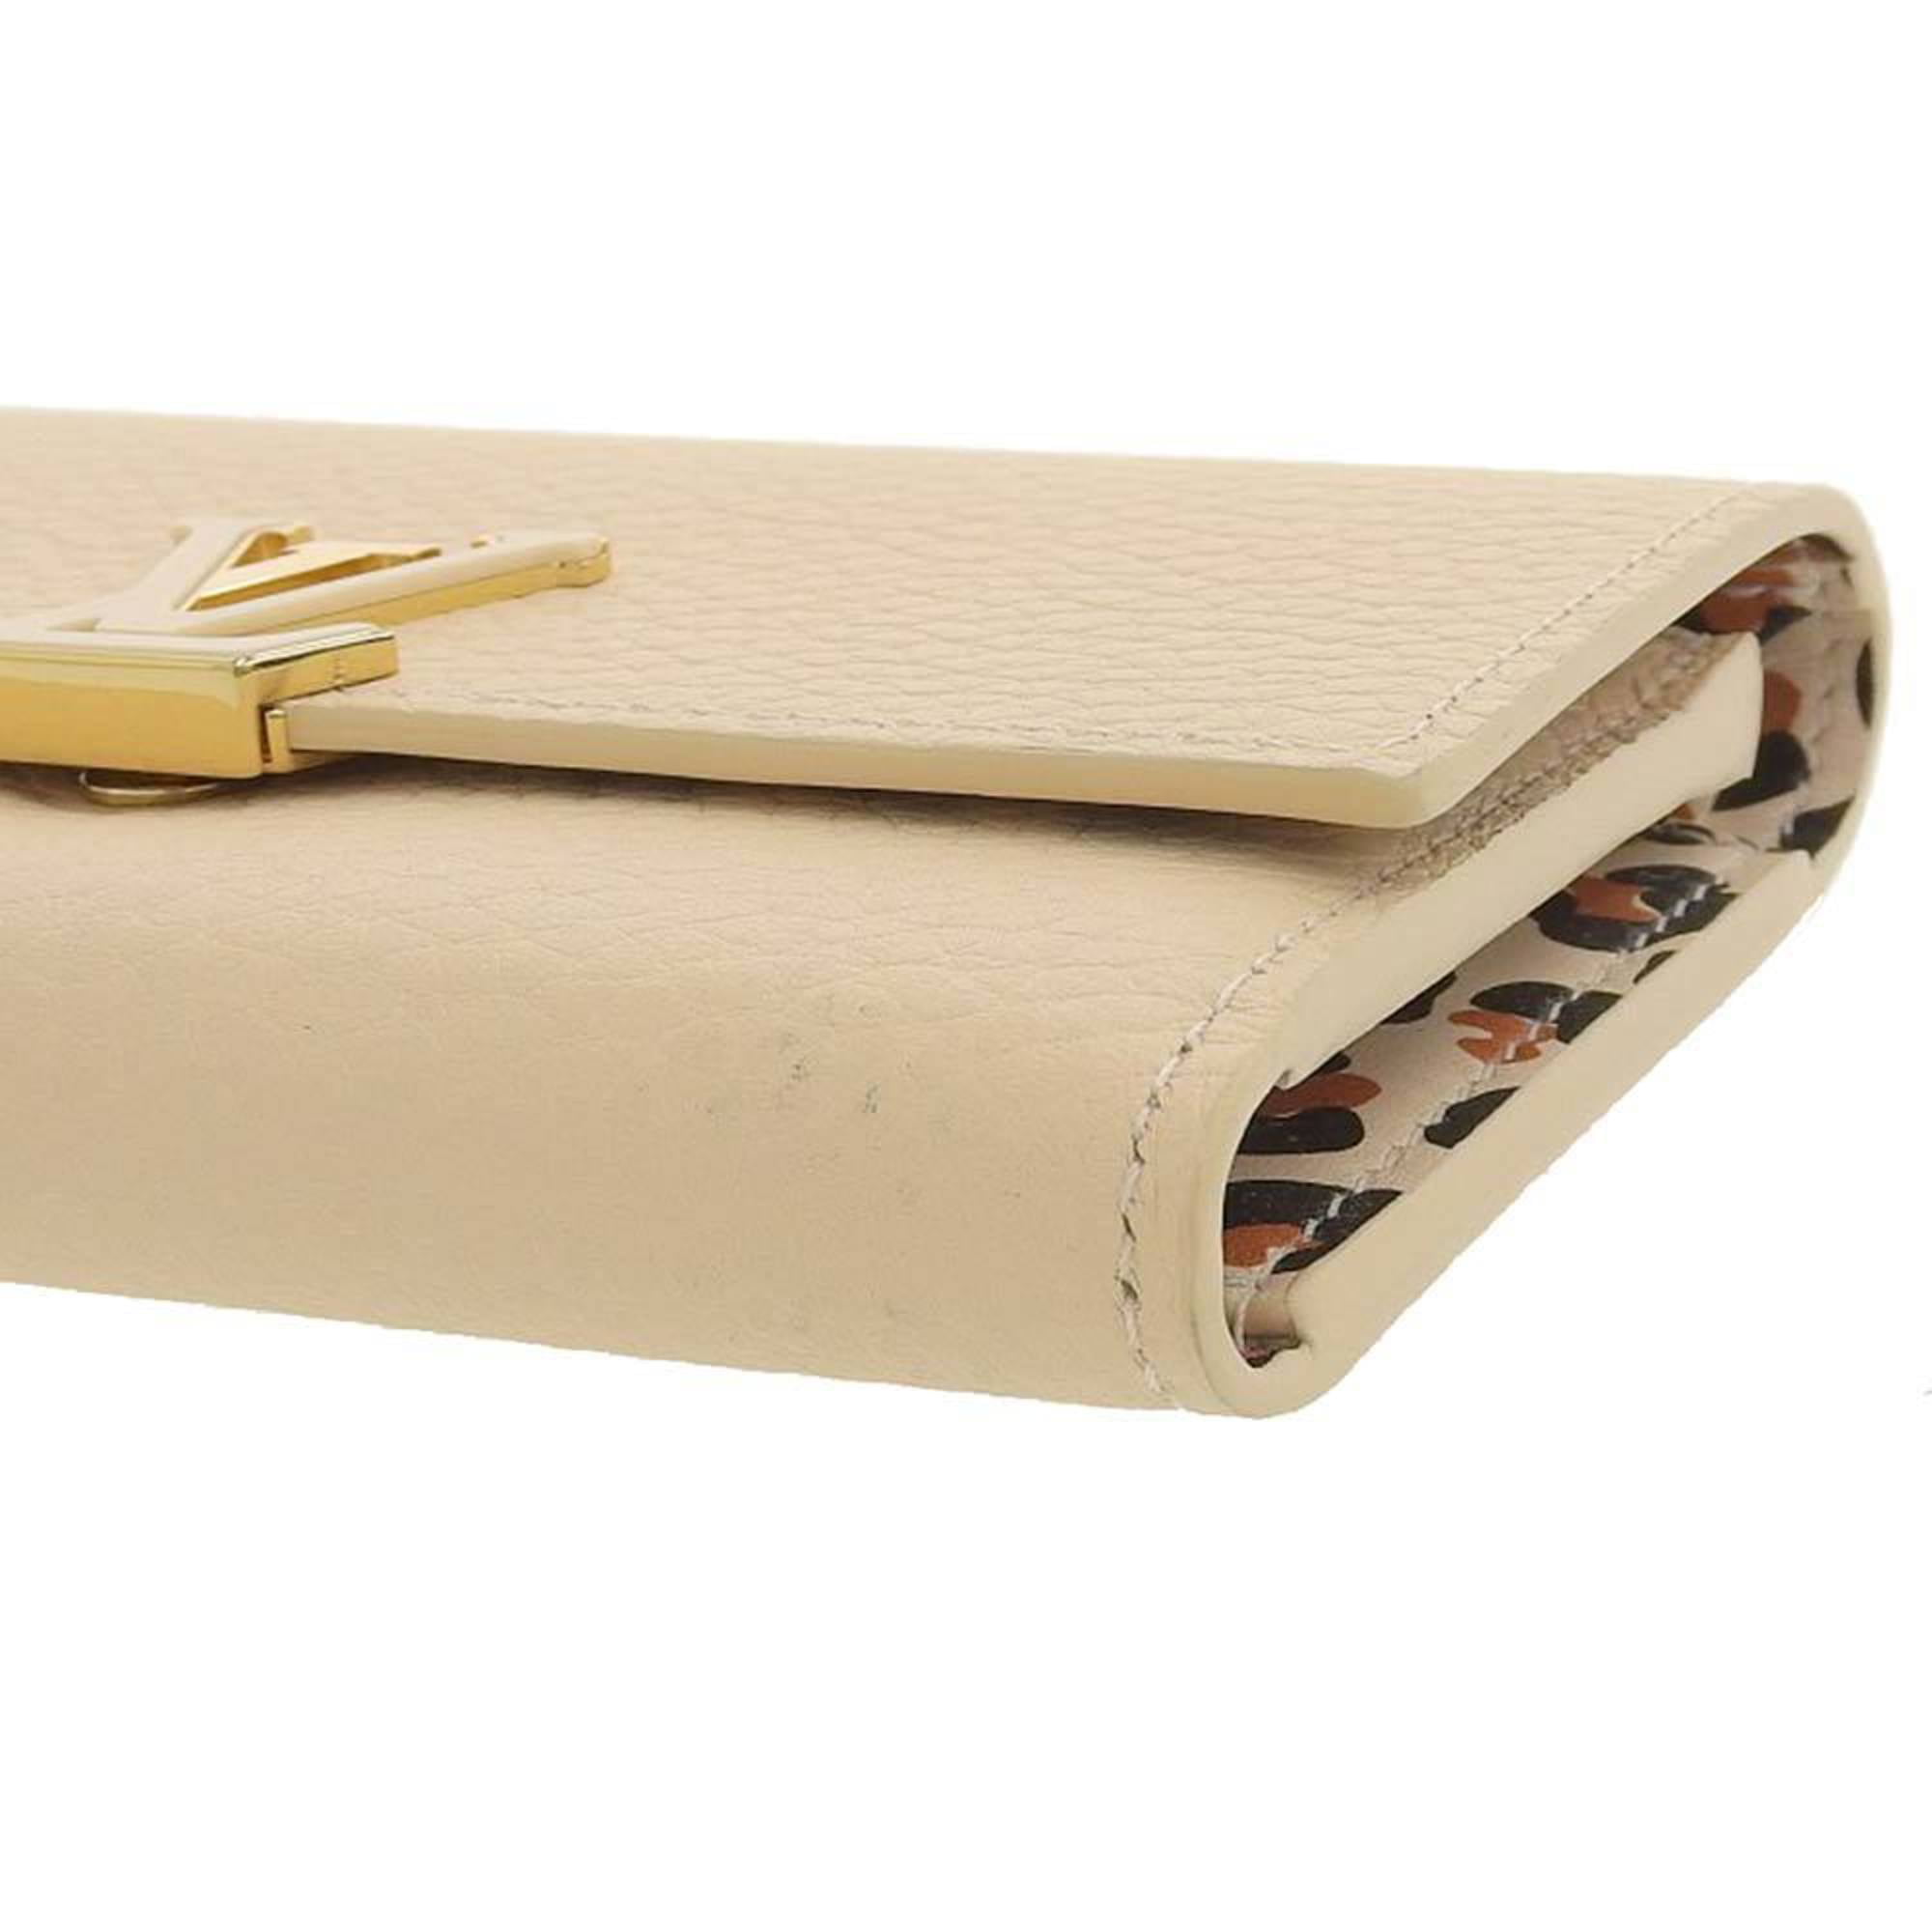 Louis Vuitton Capucines Compact Wallet Review